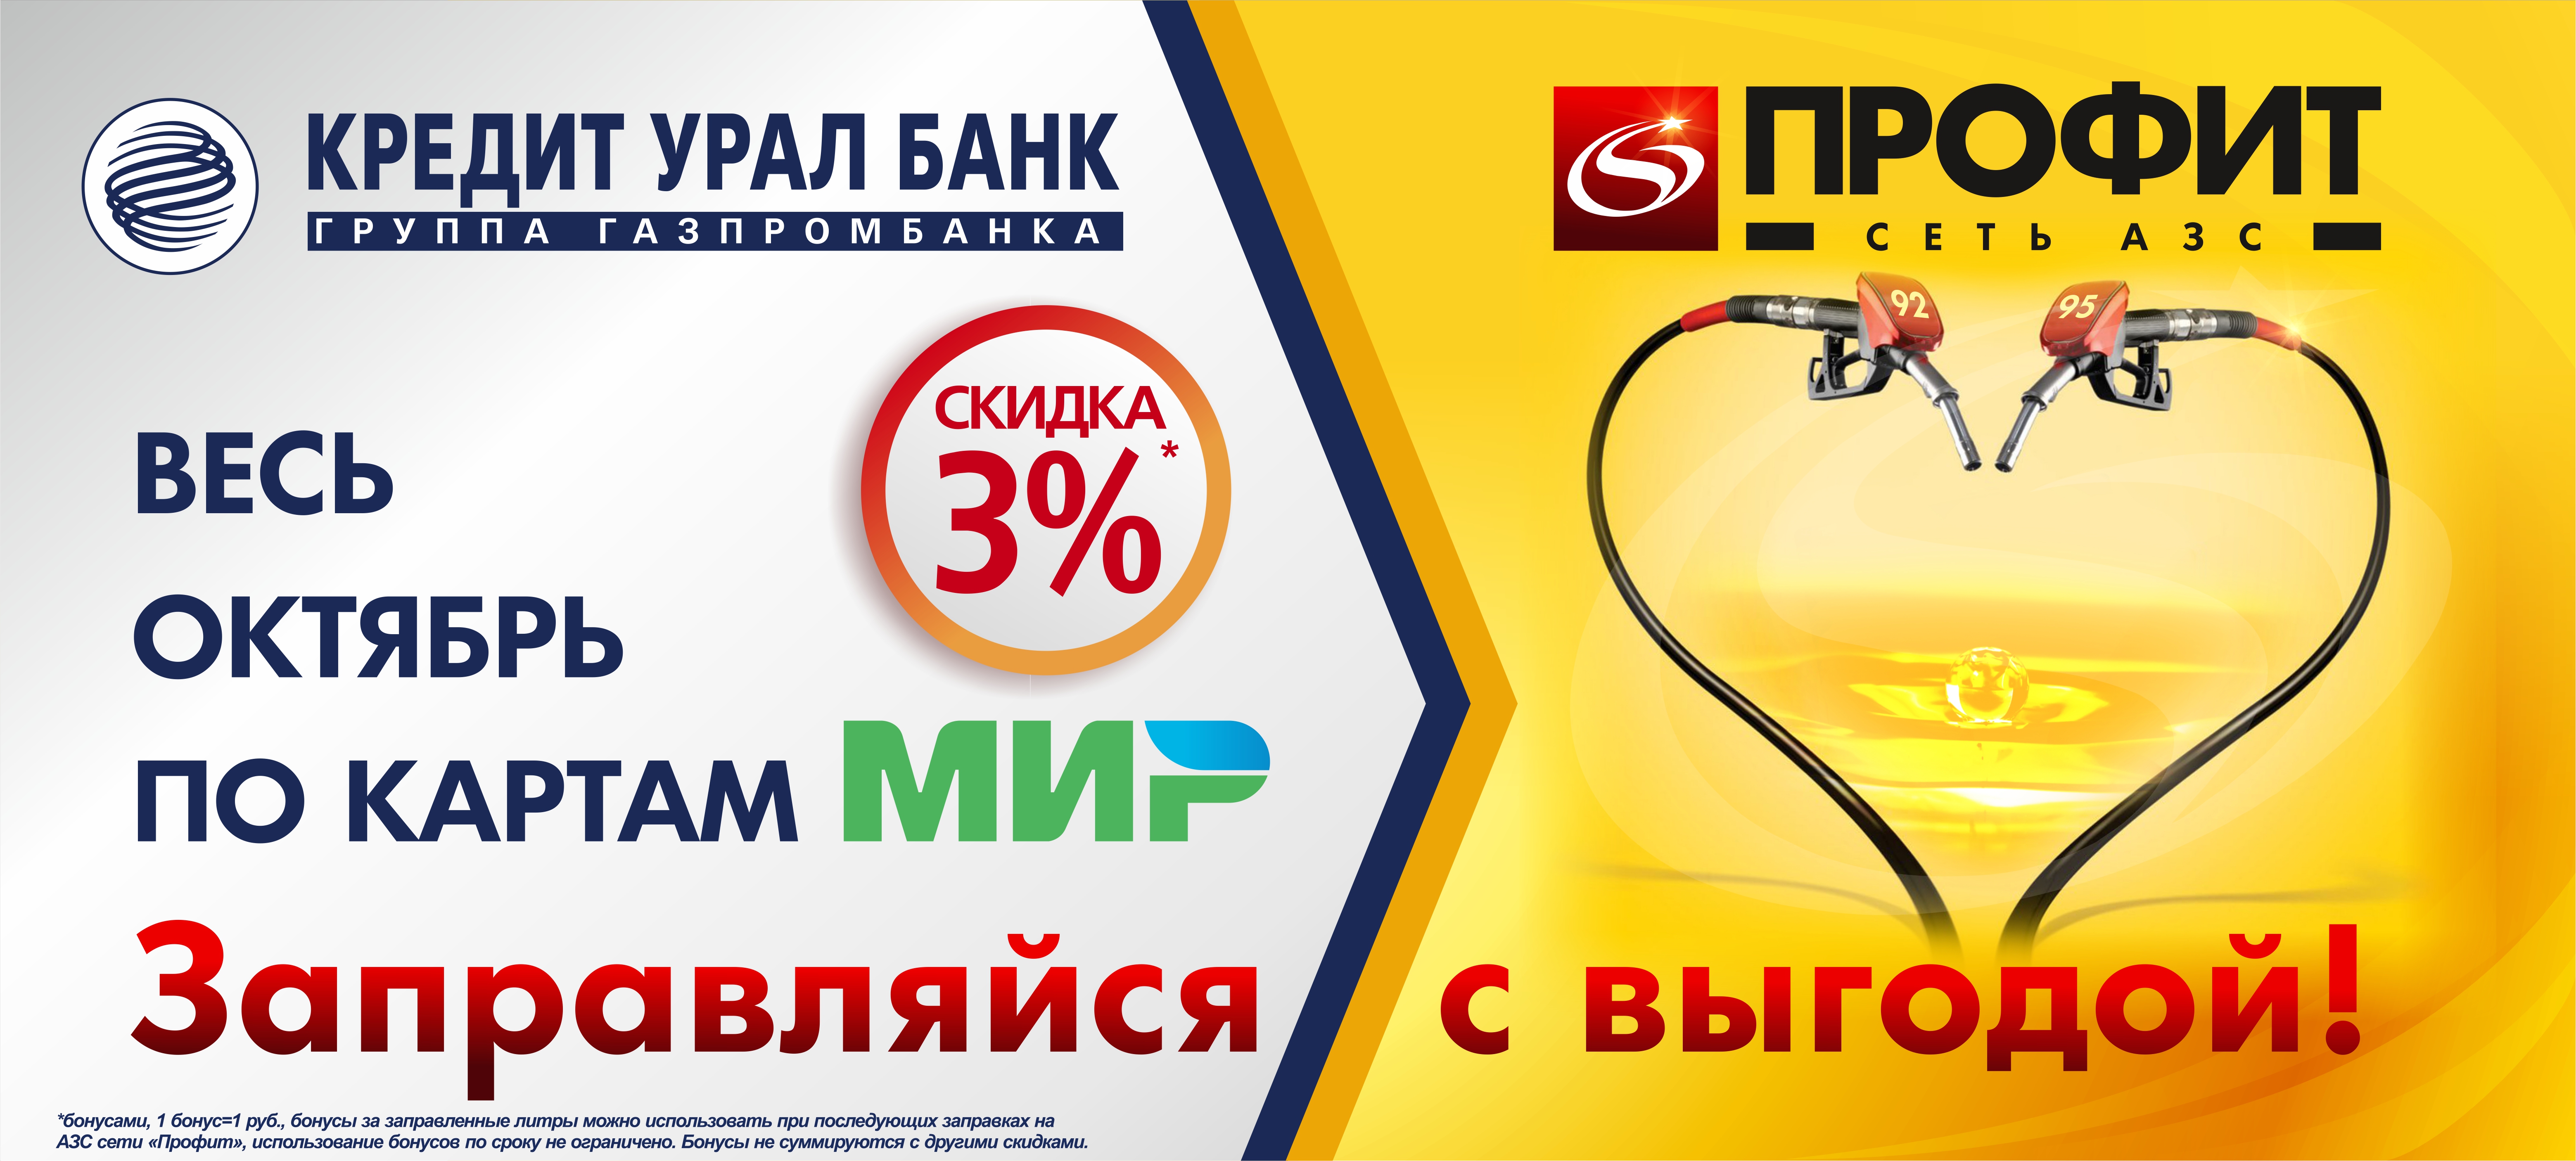 Акция от сети АЗС «Профит» для держателей карт «Мир» Кредит Урал Банка.